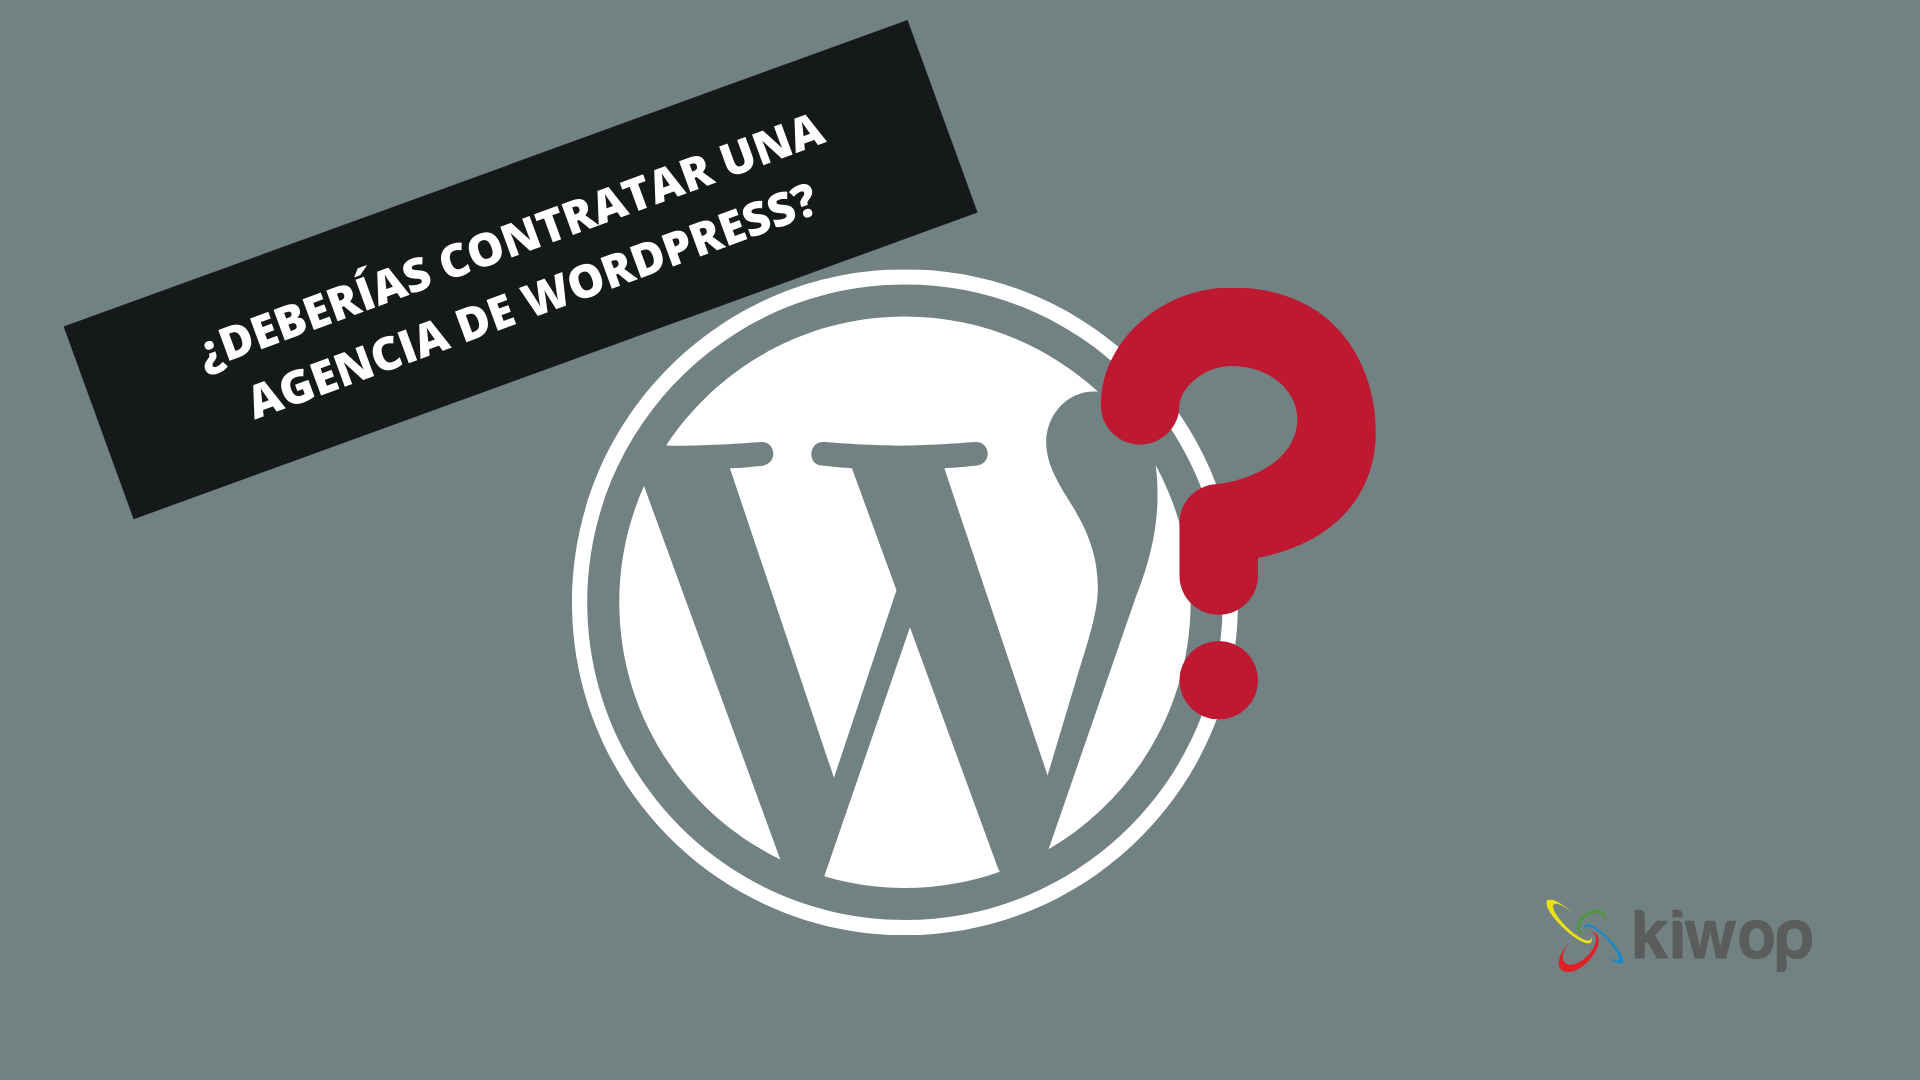 ¿Deberías contratar una agencia de WordPress?